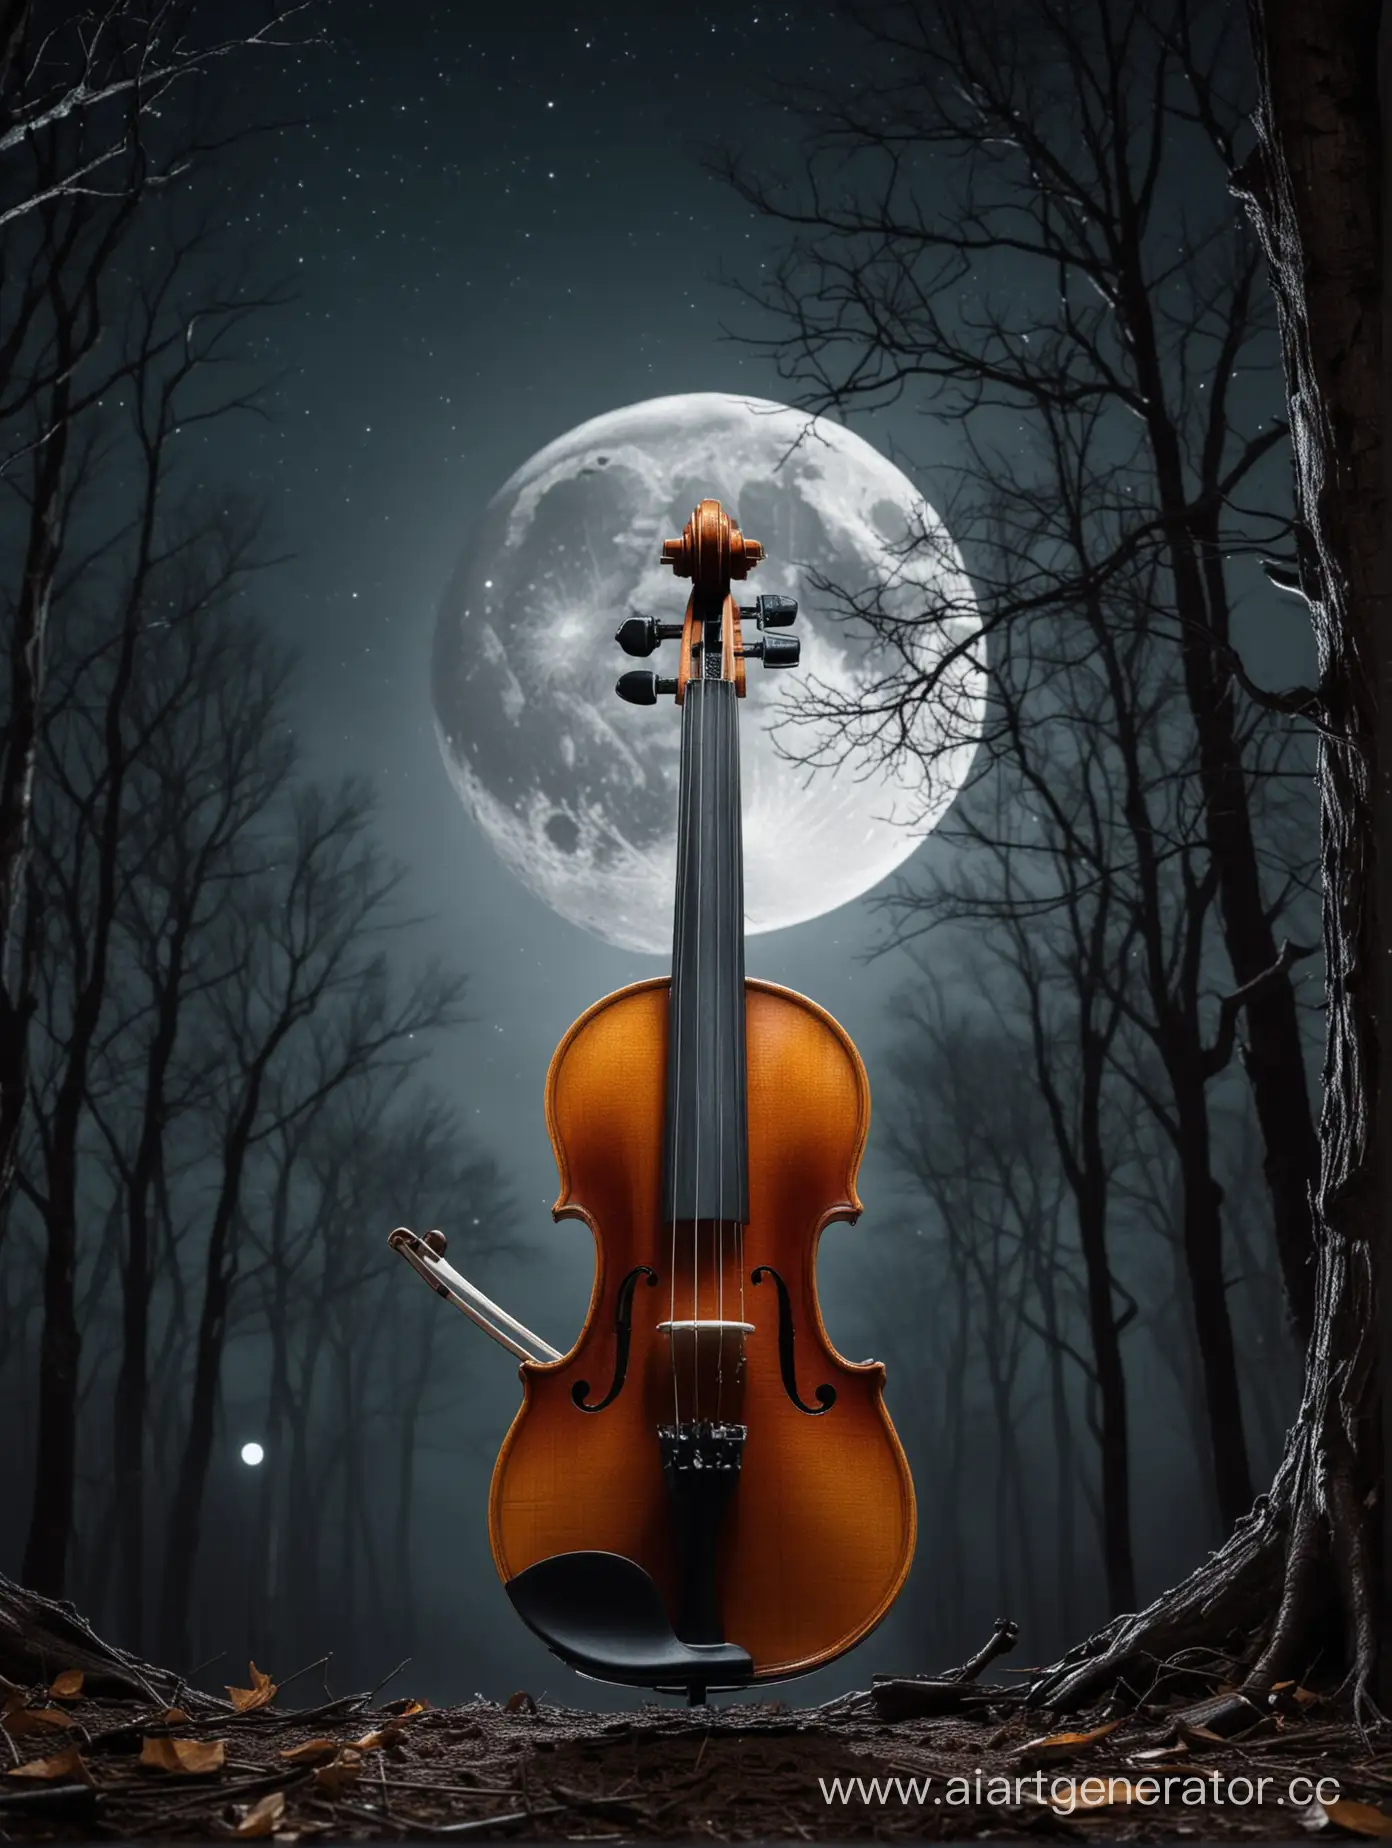 Moonlit-Violin-Serenade-amidst-Dark-Trees